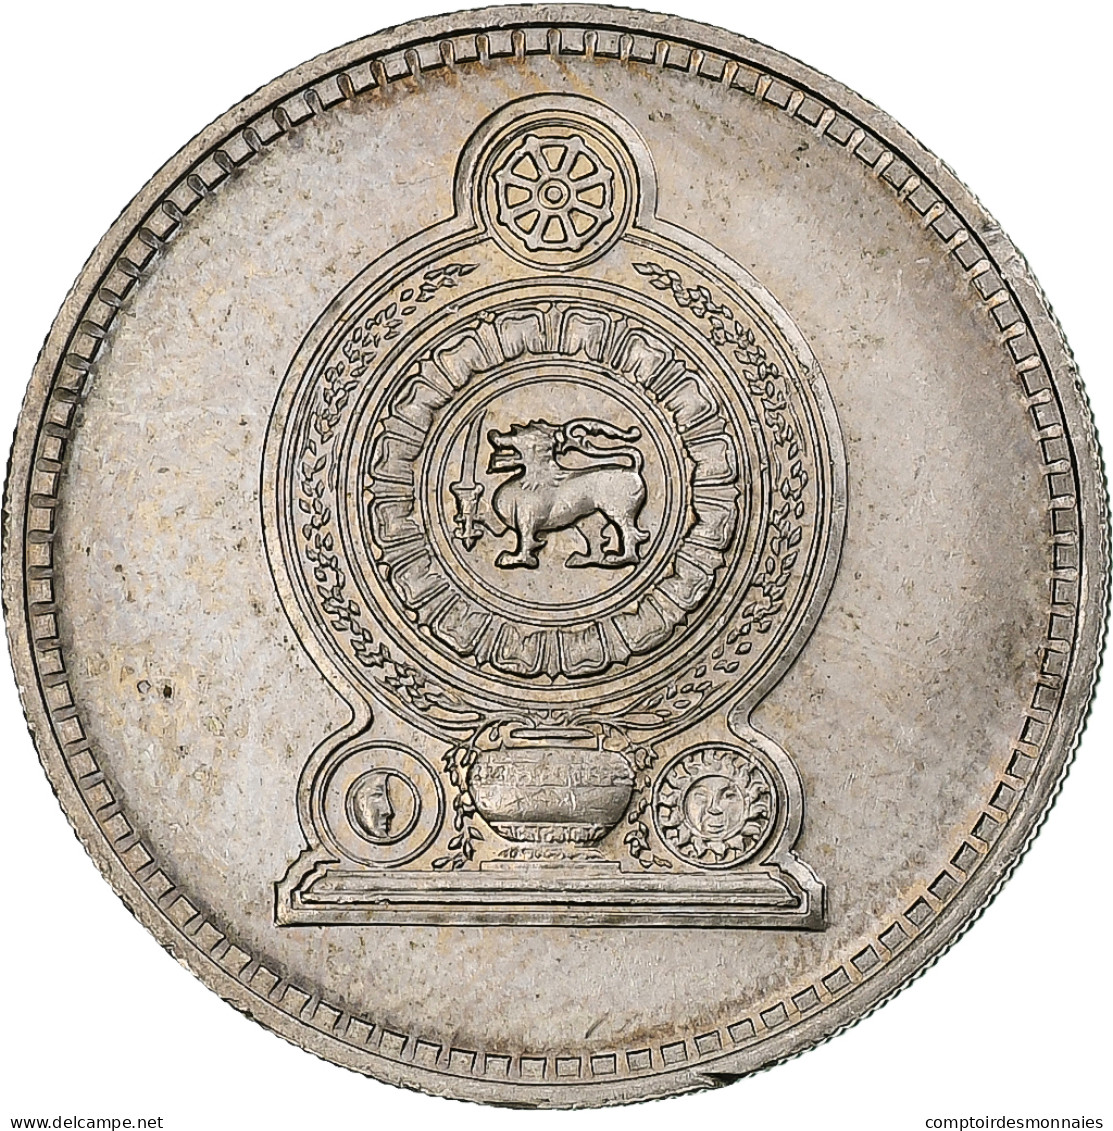 Sri Lanka, 50 Cents, 1972, Cupro-nickel, SPL, KM:135.1 - Sri Lanka